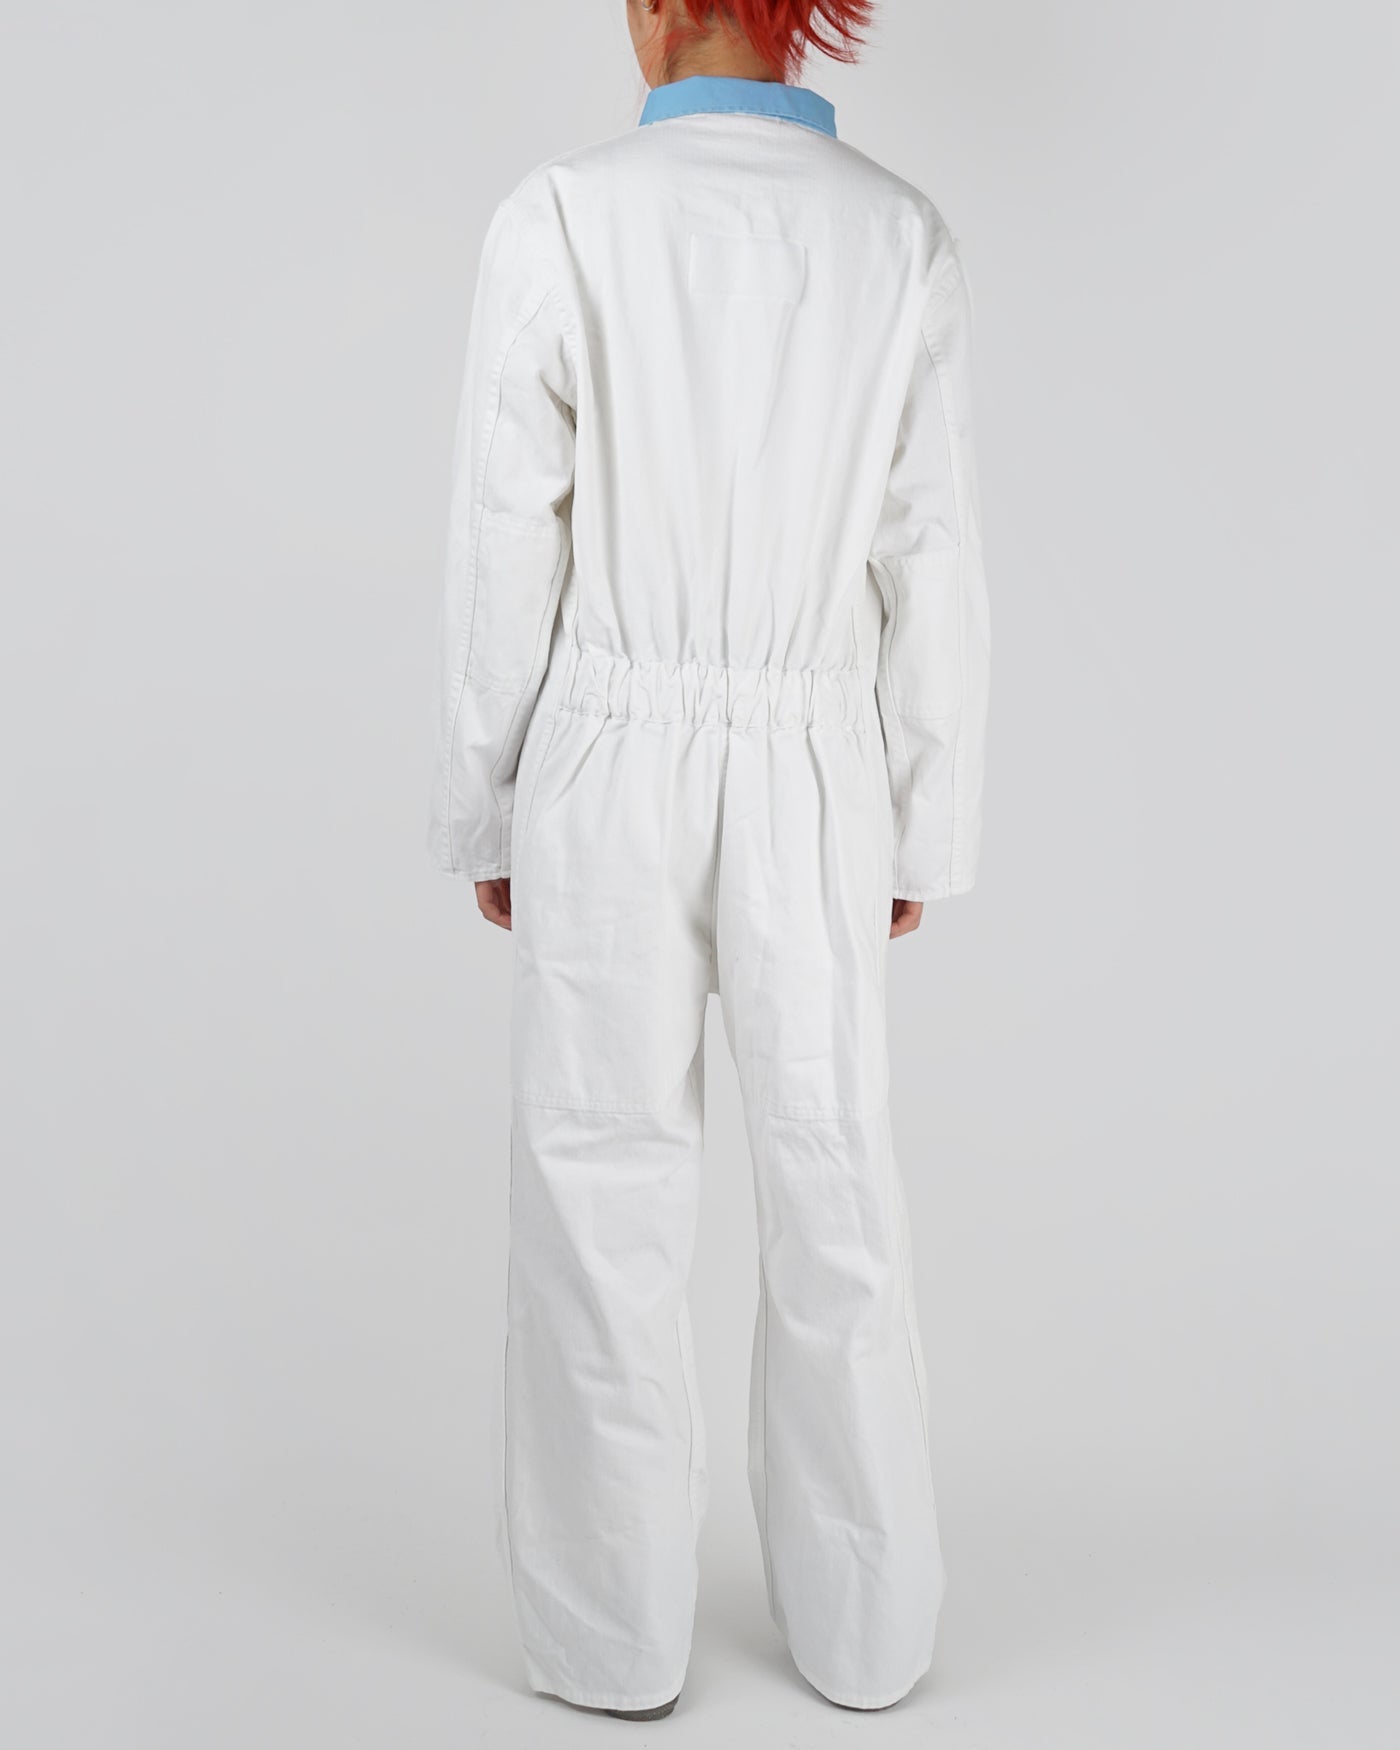 100% Cotton White Jump Suit